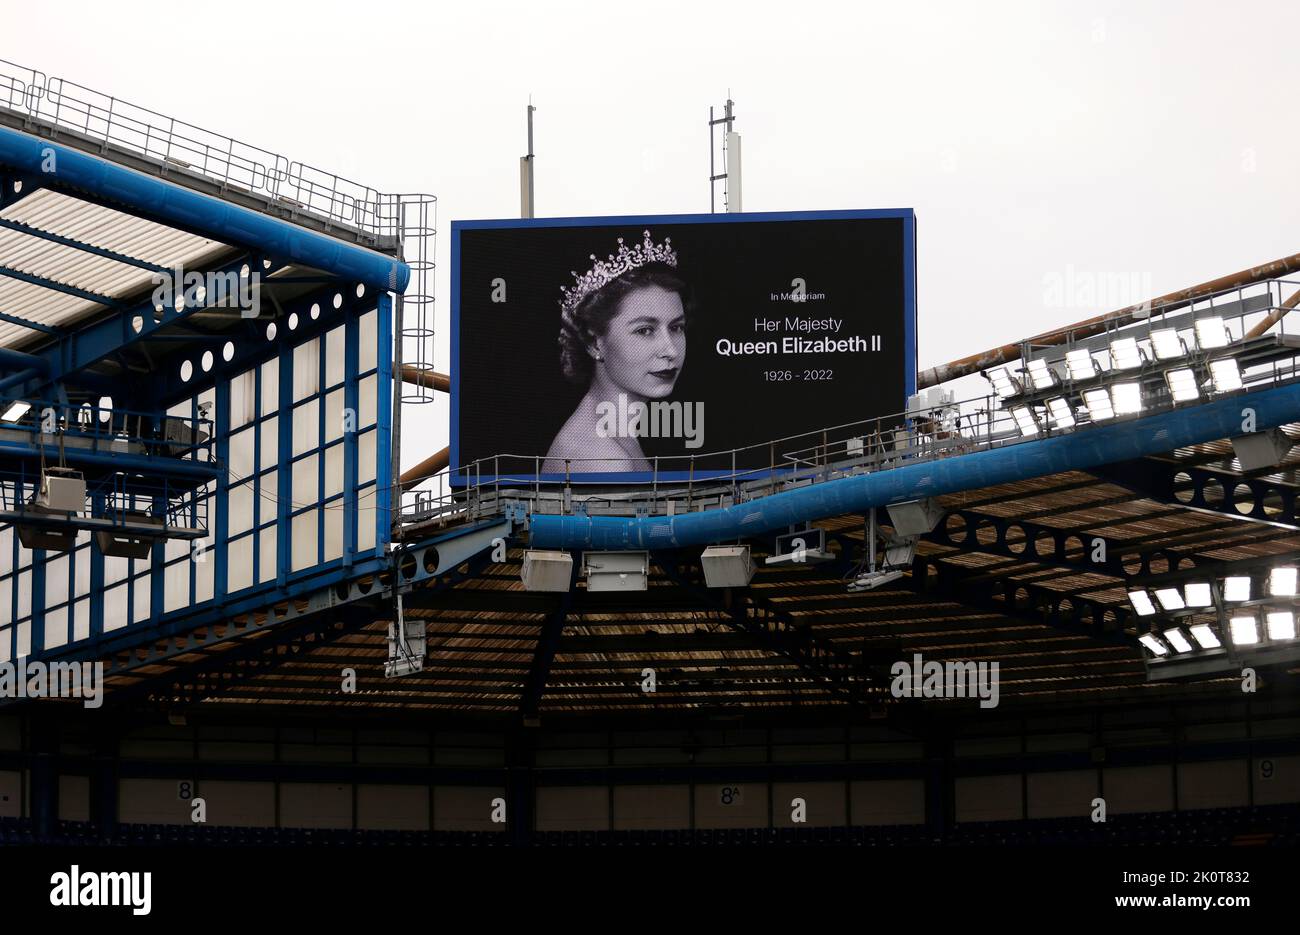 Eine Hommage an Königin Elizabeth II. Wird nach dem Tod von Königin Elizabeth II am vergangenen Donnerstag auf einer großen Leinwand in der Stamford Bridge in London gezeigt. Bilddatum: Dienstag, 13. September 2022. Stockfoto